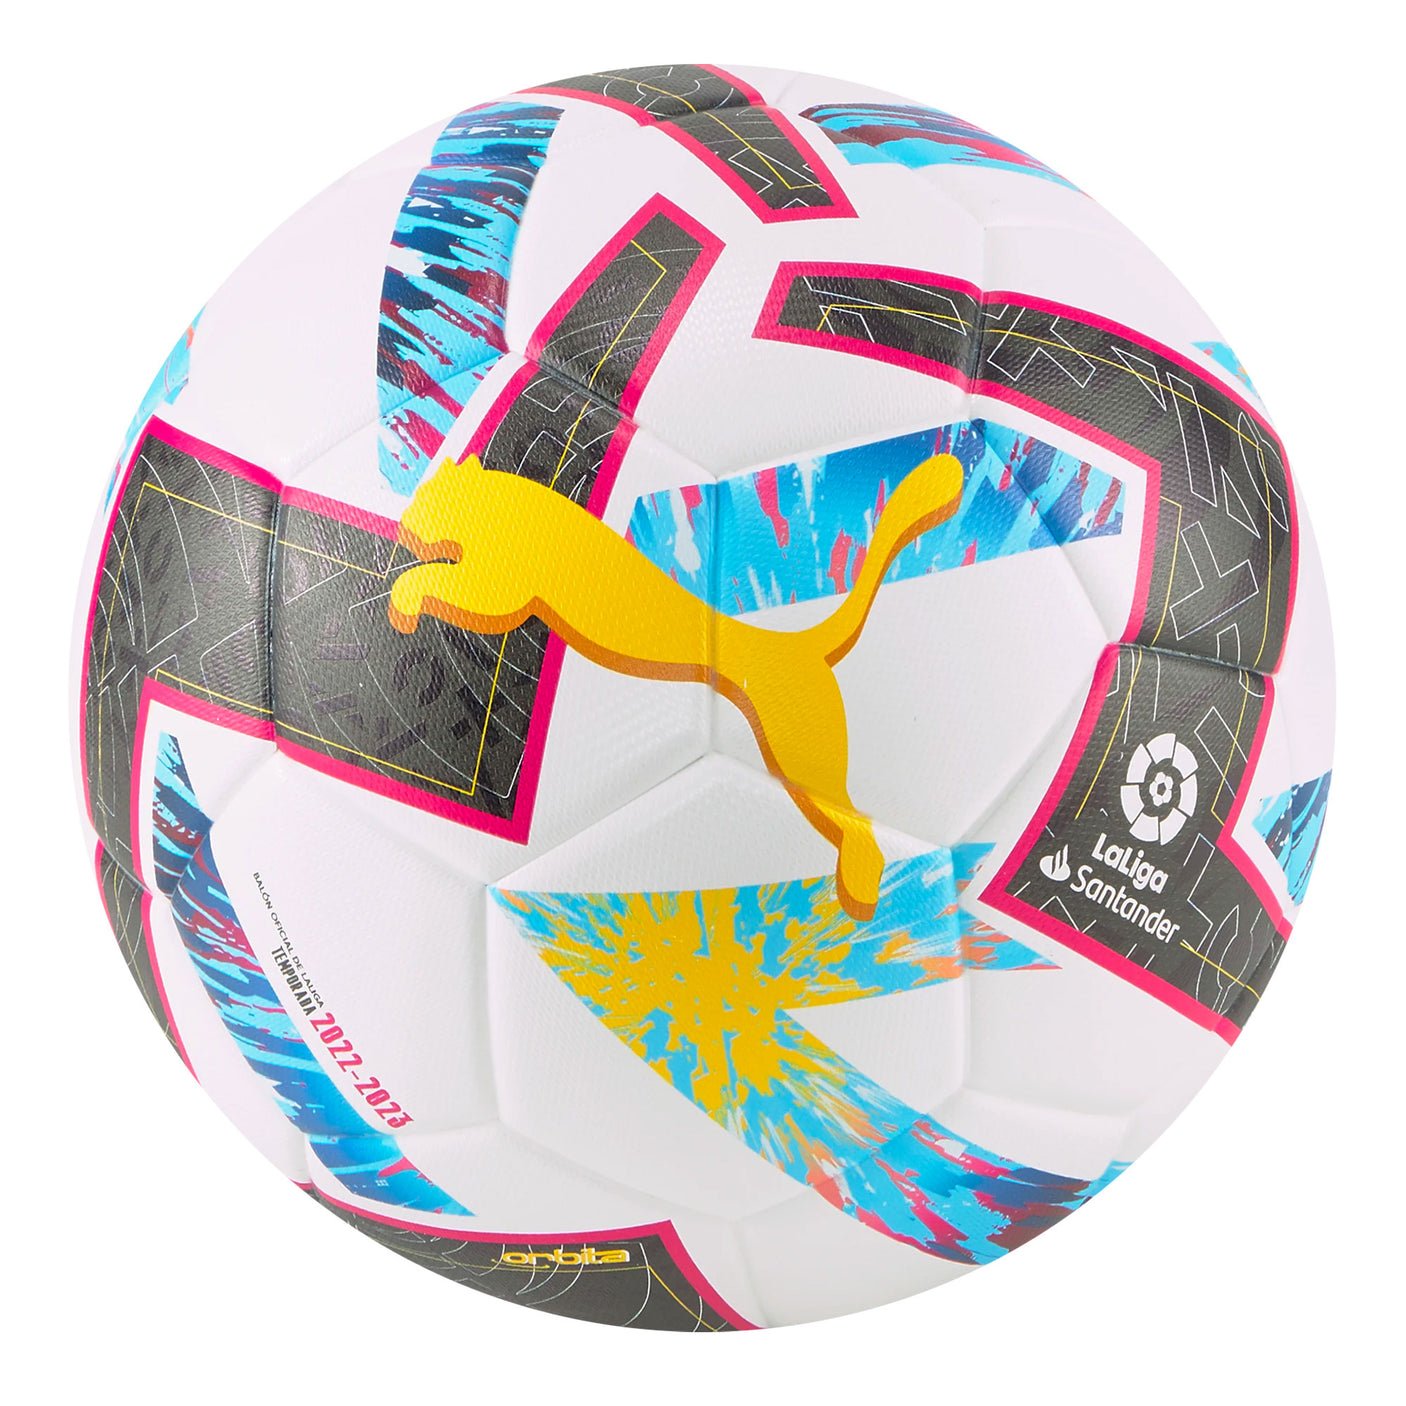 Official Match Soccer Balls  Official Match Balls – Azteca Soccer